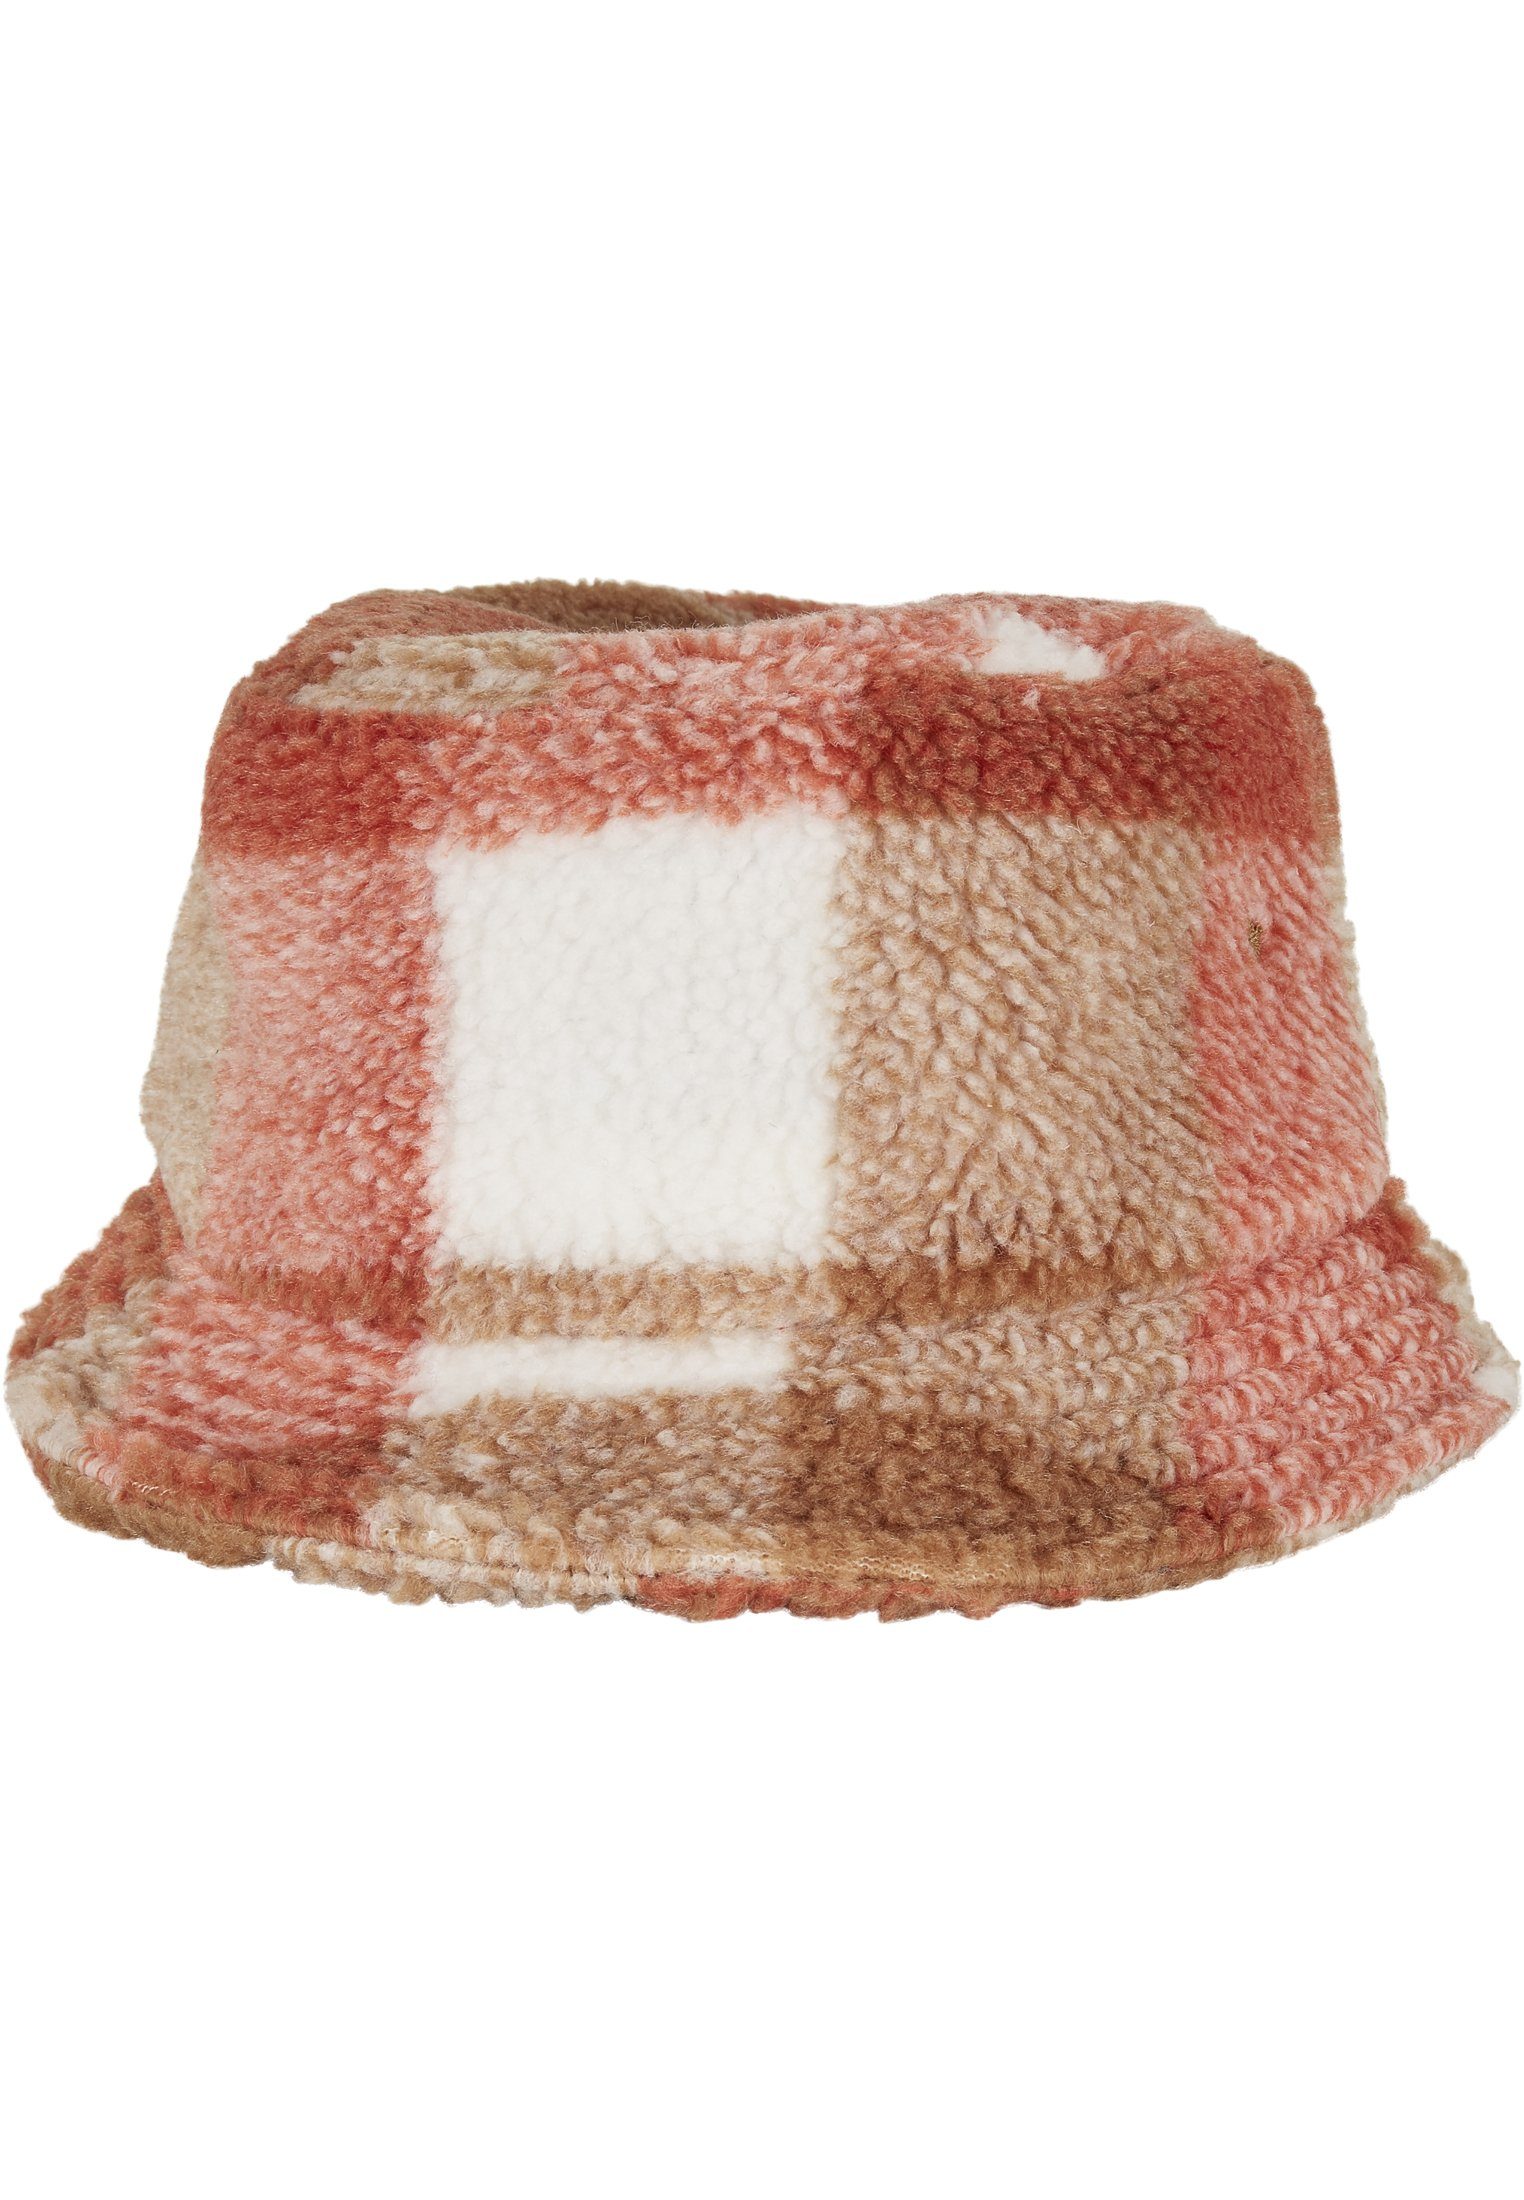 Flexfit Flex Cap Bucket Hat Sherpa Check Bucket Hat whitesand/toffee